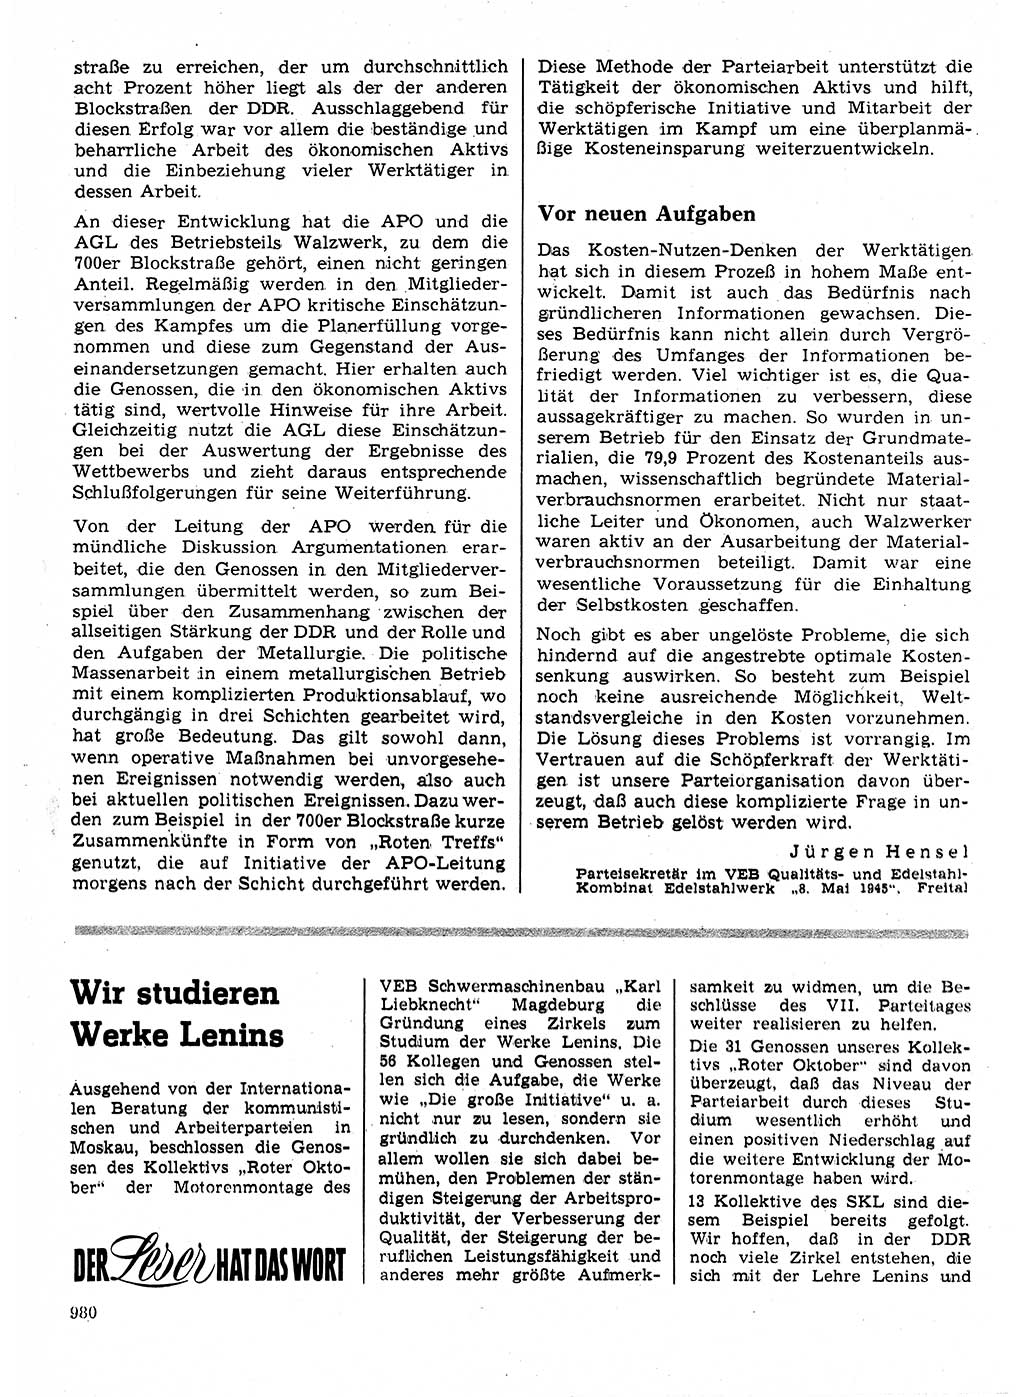 Neuer Weg (NW), Organ des Zentralkomitees (ZK) der SED (Sozialistische Einheitspartei Deutschlands) für Fragen des Parteilebens, 24. Jahrgang [Deutsche Demokratische Republik (DDR)] 1969, Seite 980 (NW ZK SED DDR 1969, S. 980)